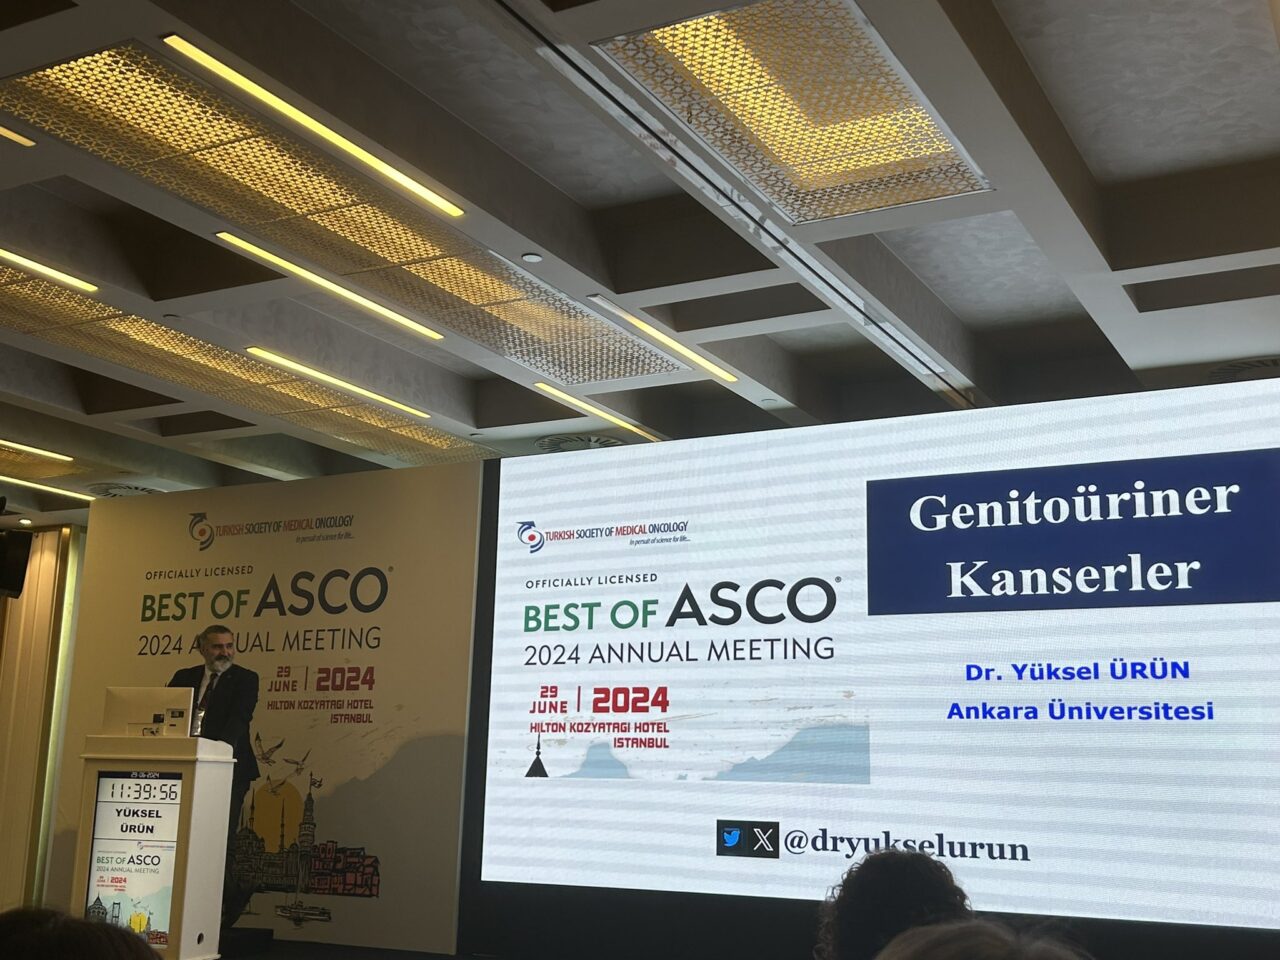 Enes Erul: Best of ASCO 2024 Annual Meeting in Istanbul!